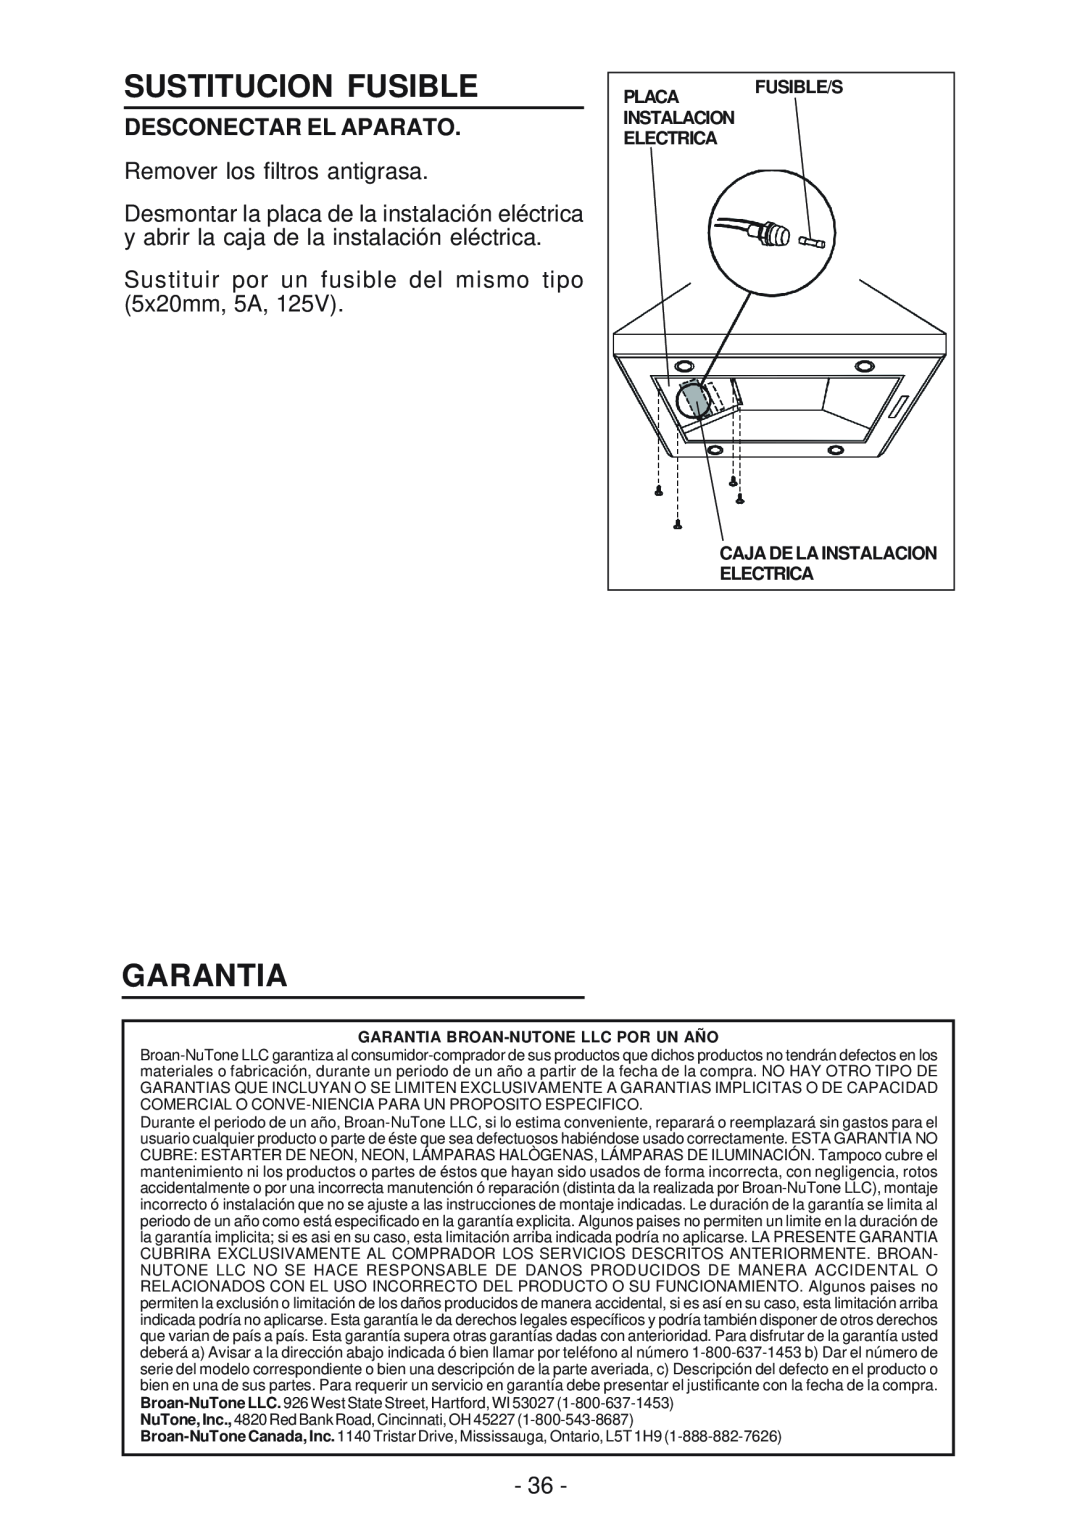 Broan 63000EX manual Sustitucion Fusible, Garantia, Desconectar El Aparato, Fusible/S, Caja De La Instalacion Electrica 